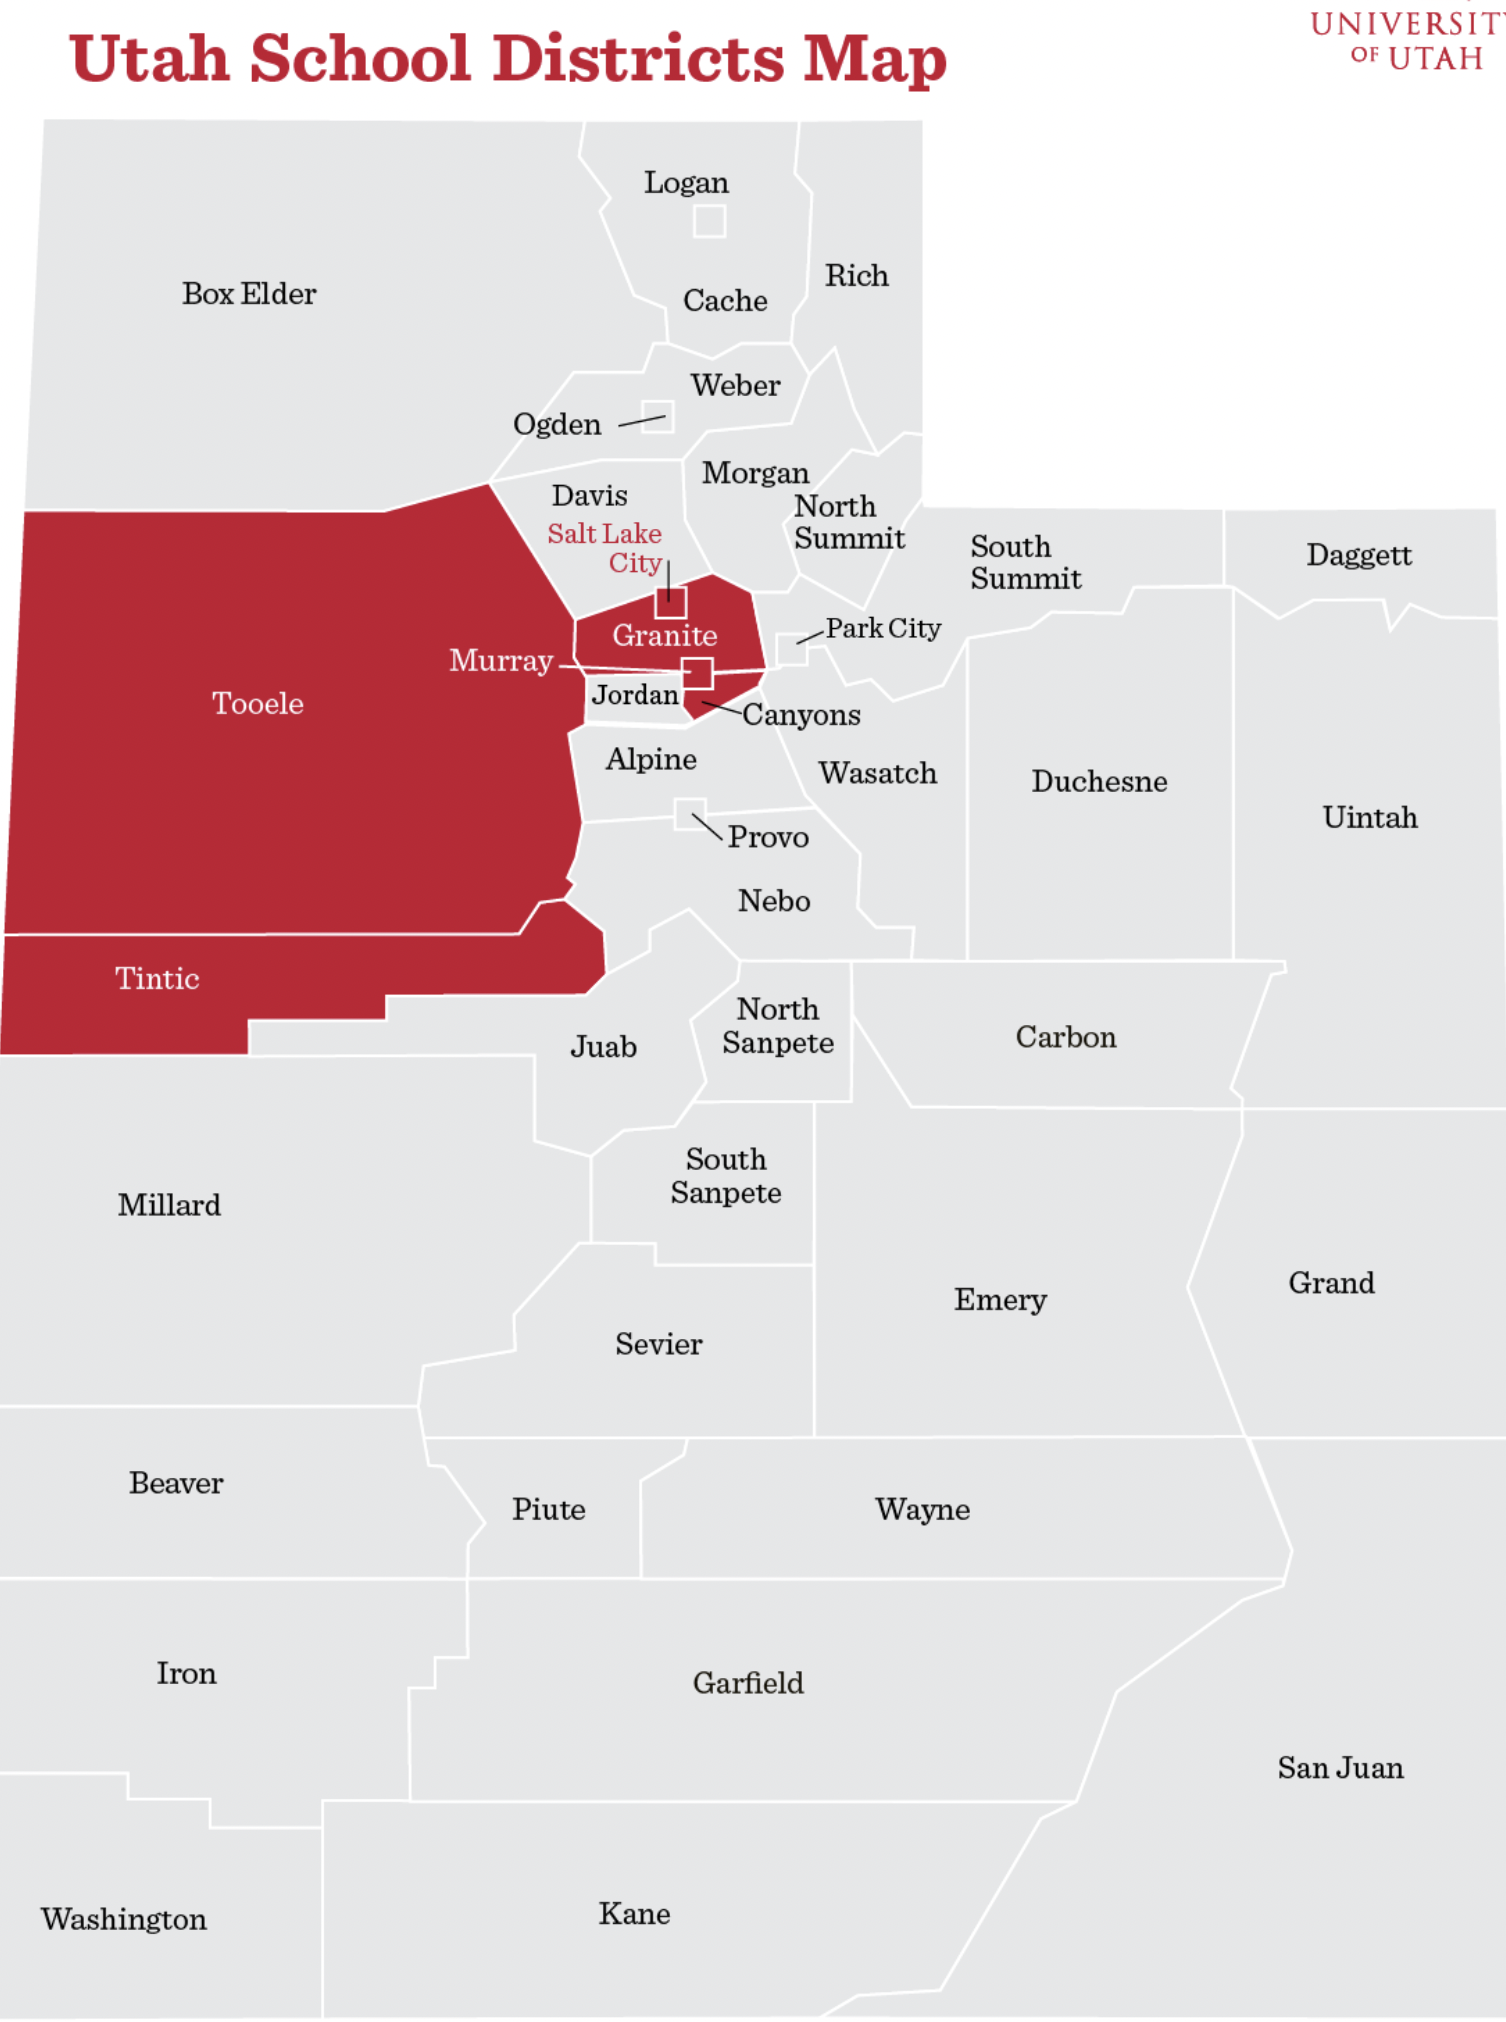 Utah School District map showing University of Utah's reach